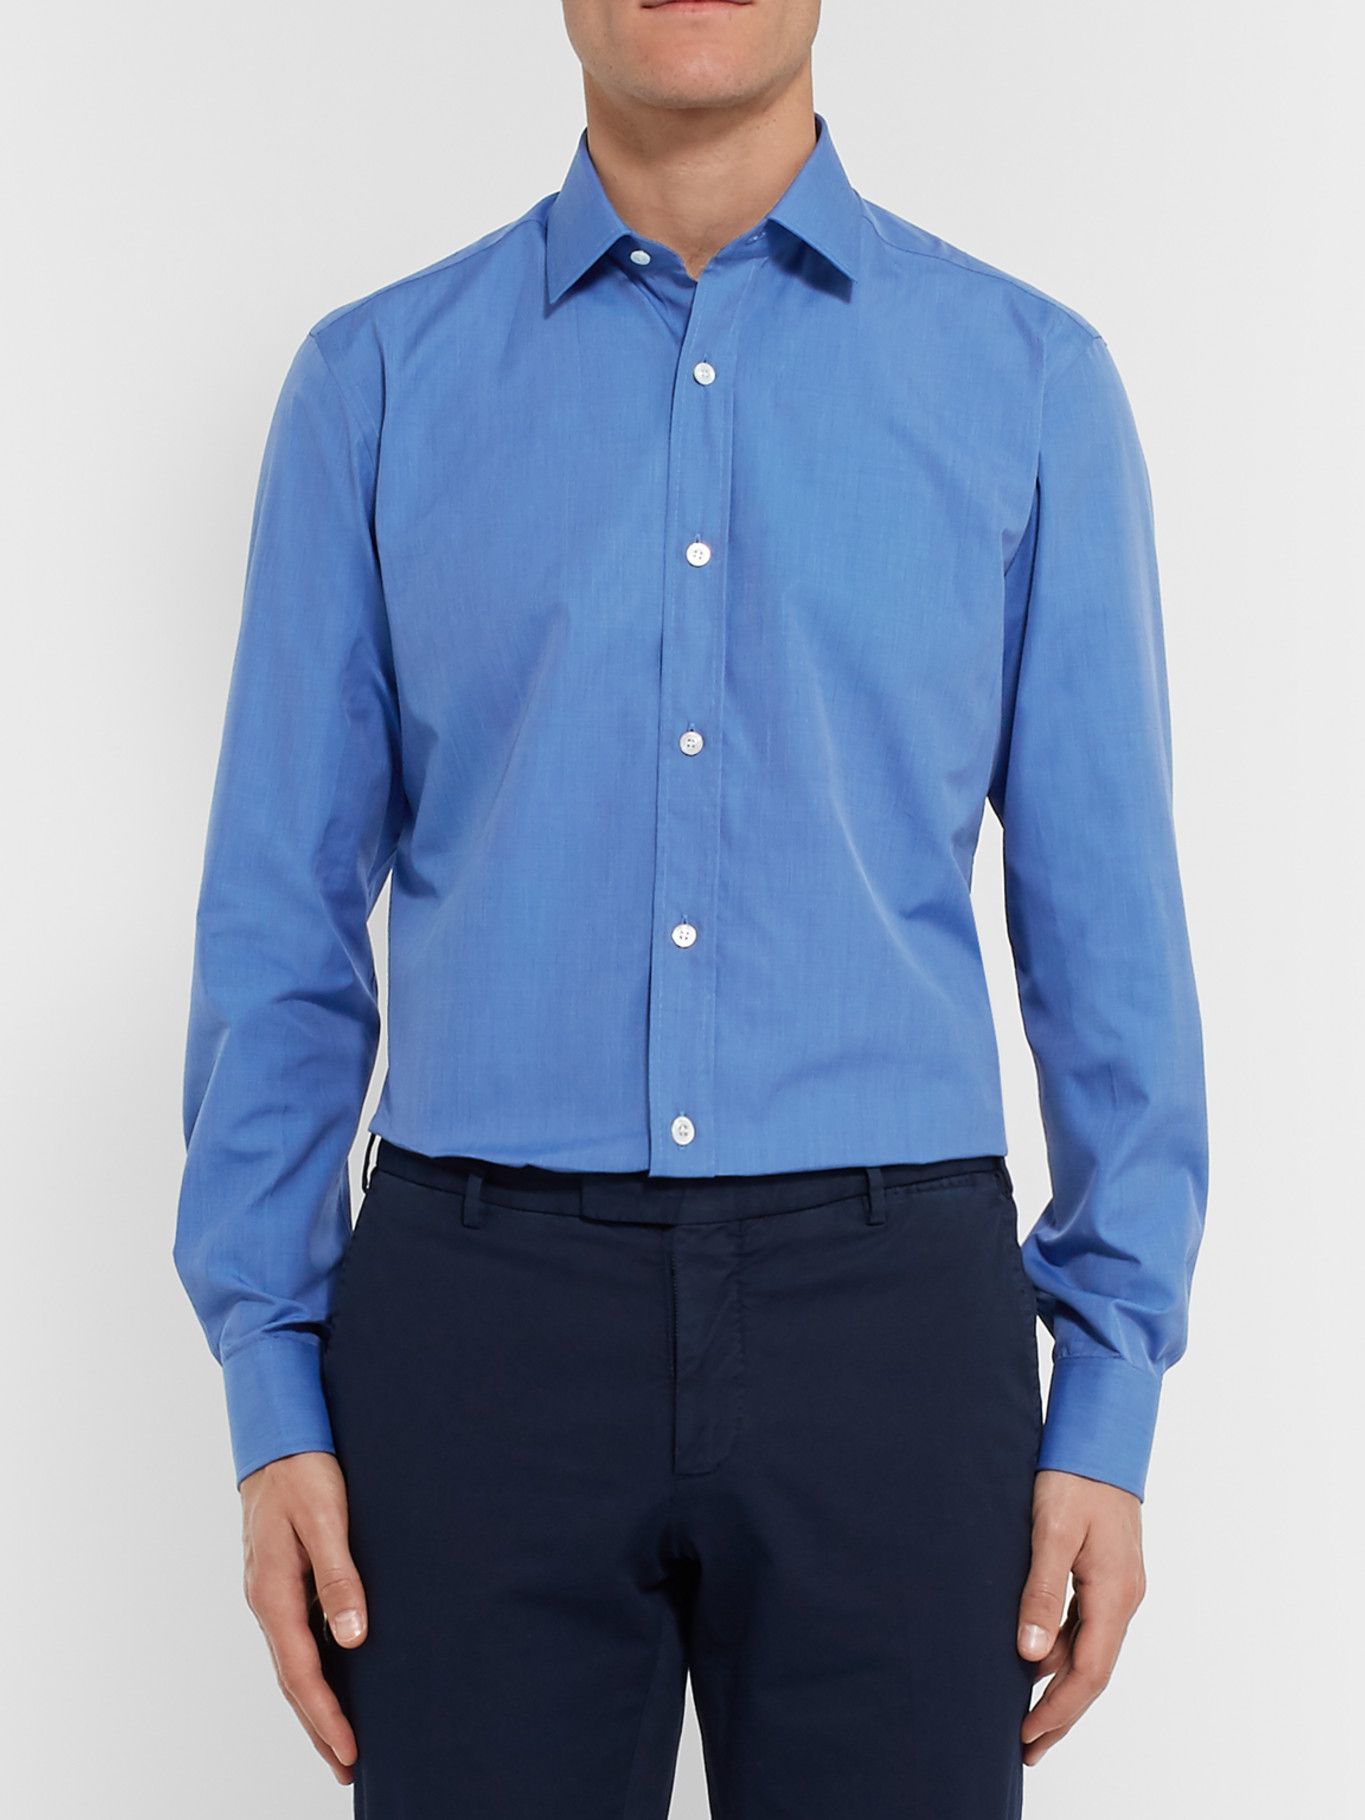 CHARVET - Blue Slim-Fit Cotton Shirt - Blue Charvet